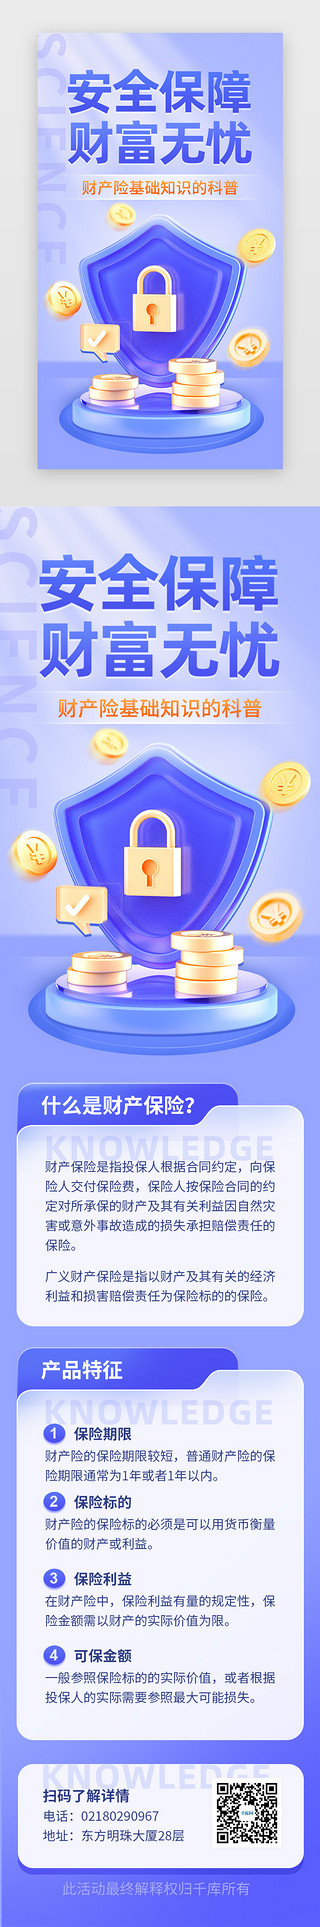 知识图UI设计素材_财产保险知识科普app主界面立体蓝紫盾牌